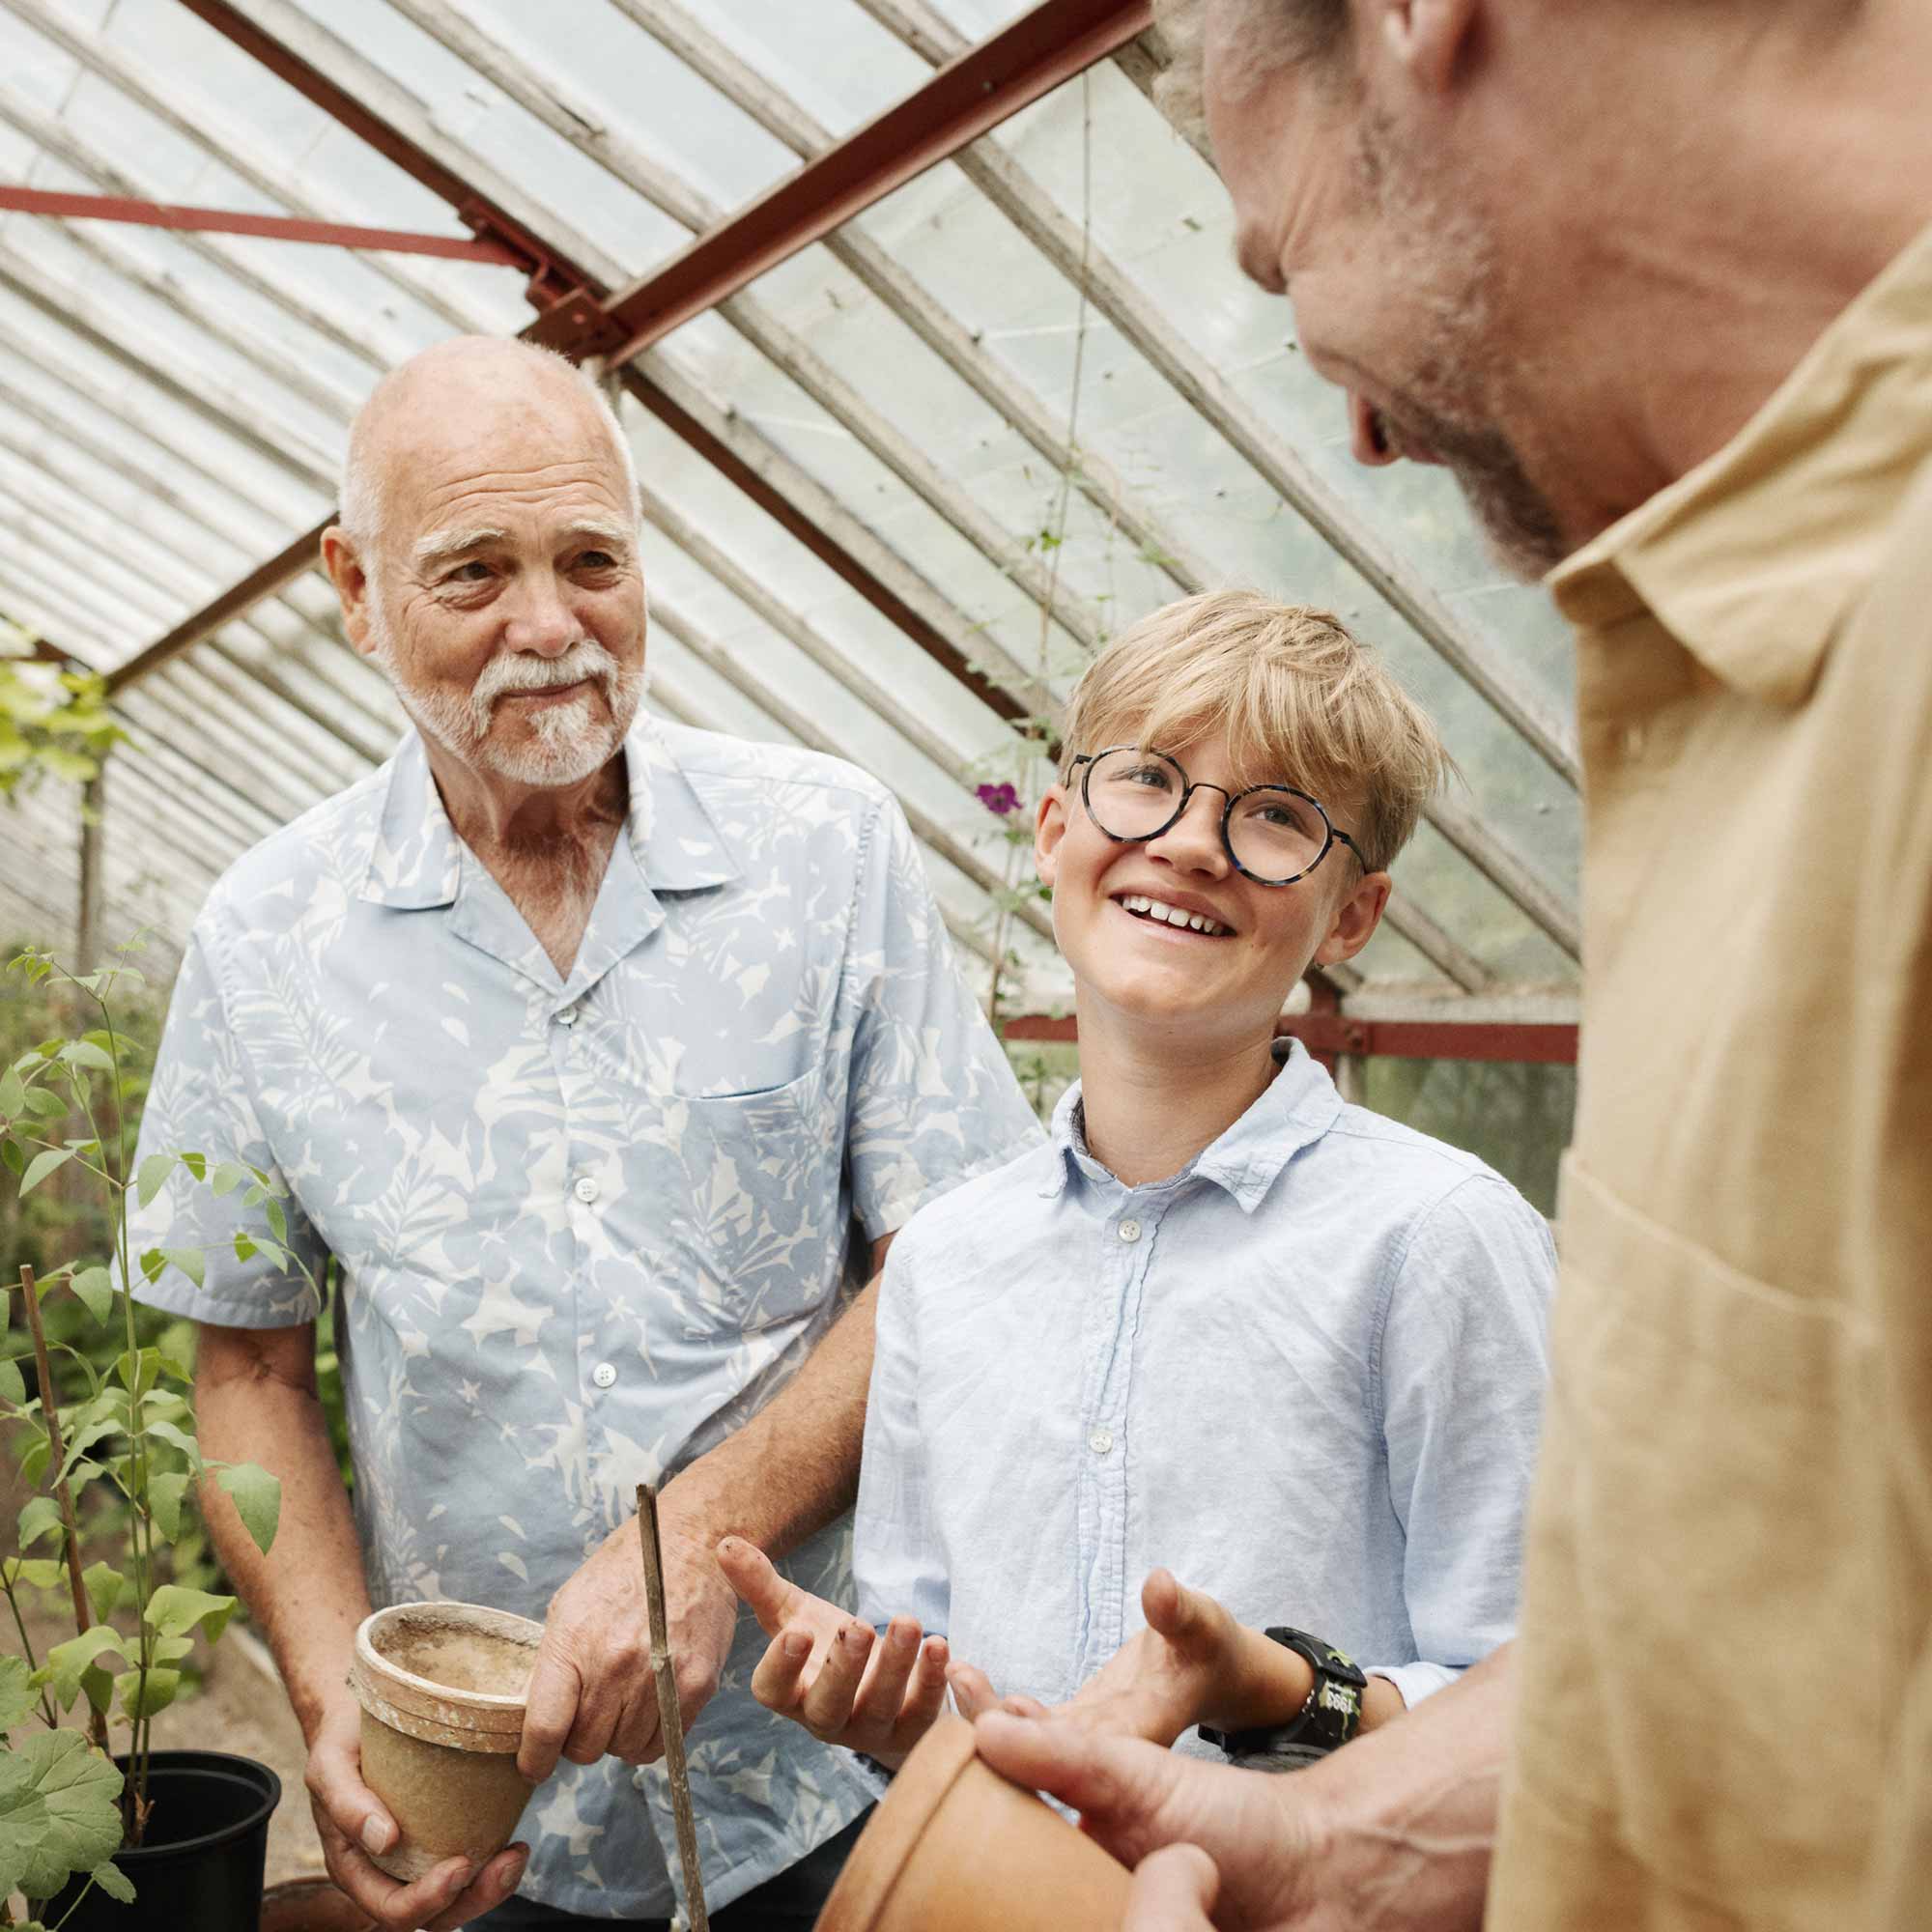 Morfar, pappa och barn jobbar och pratar i växthuset